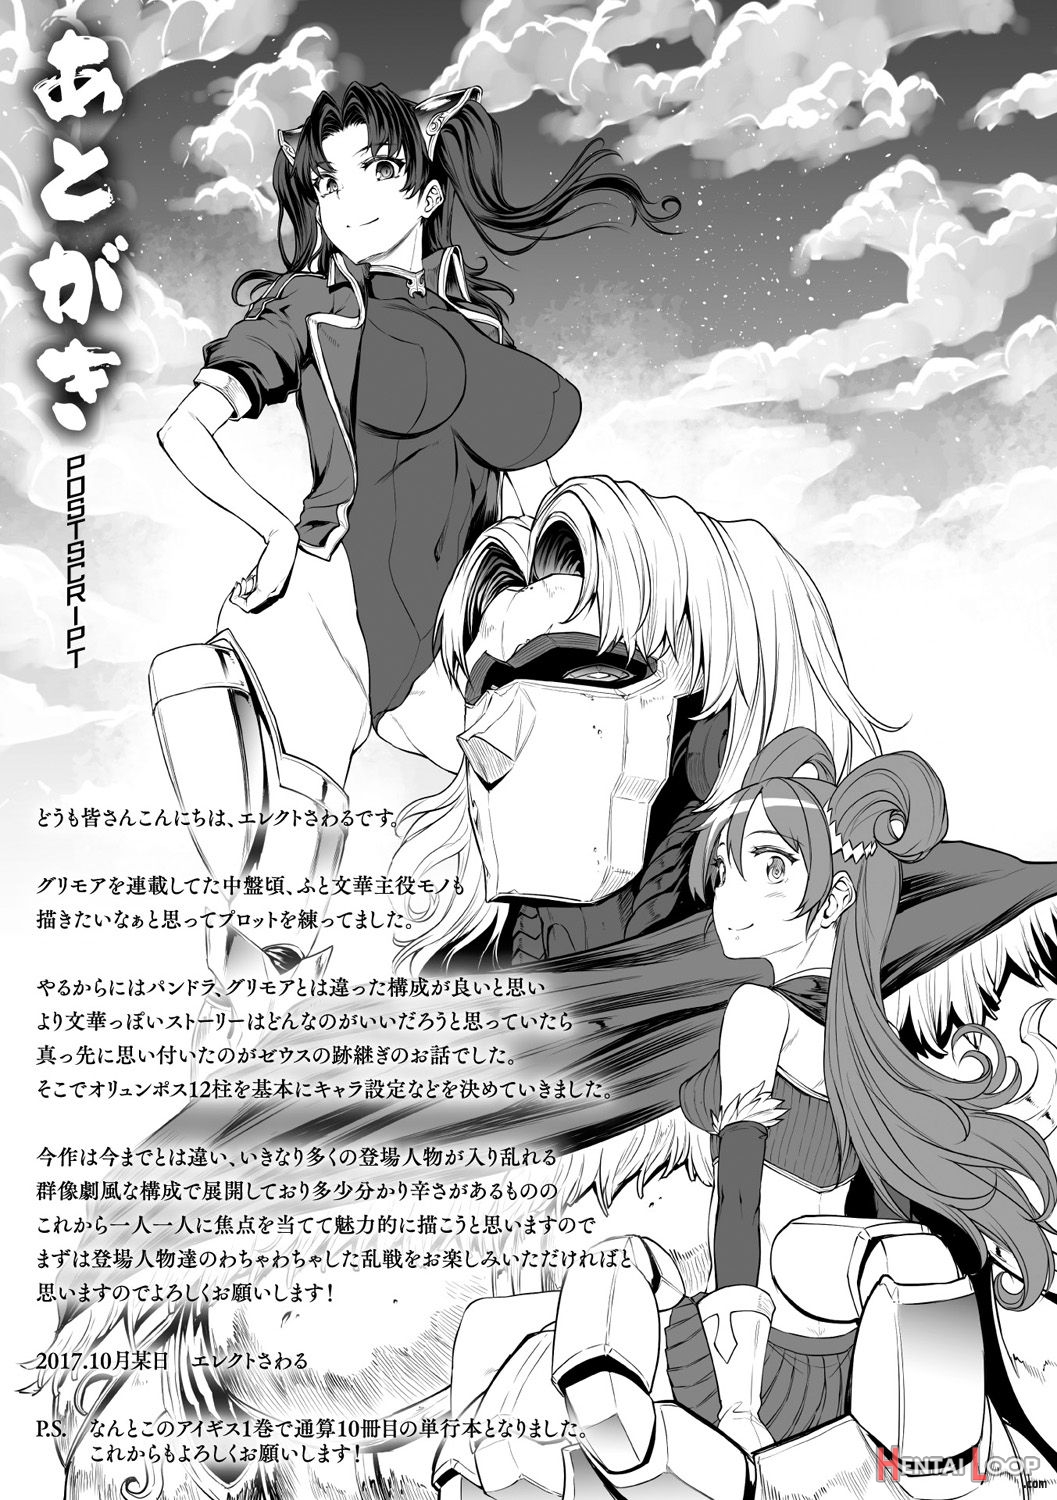 Raikou Shinki Igis Magia -pandra Saga 3rd Ignition- page 220